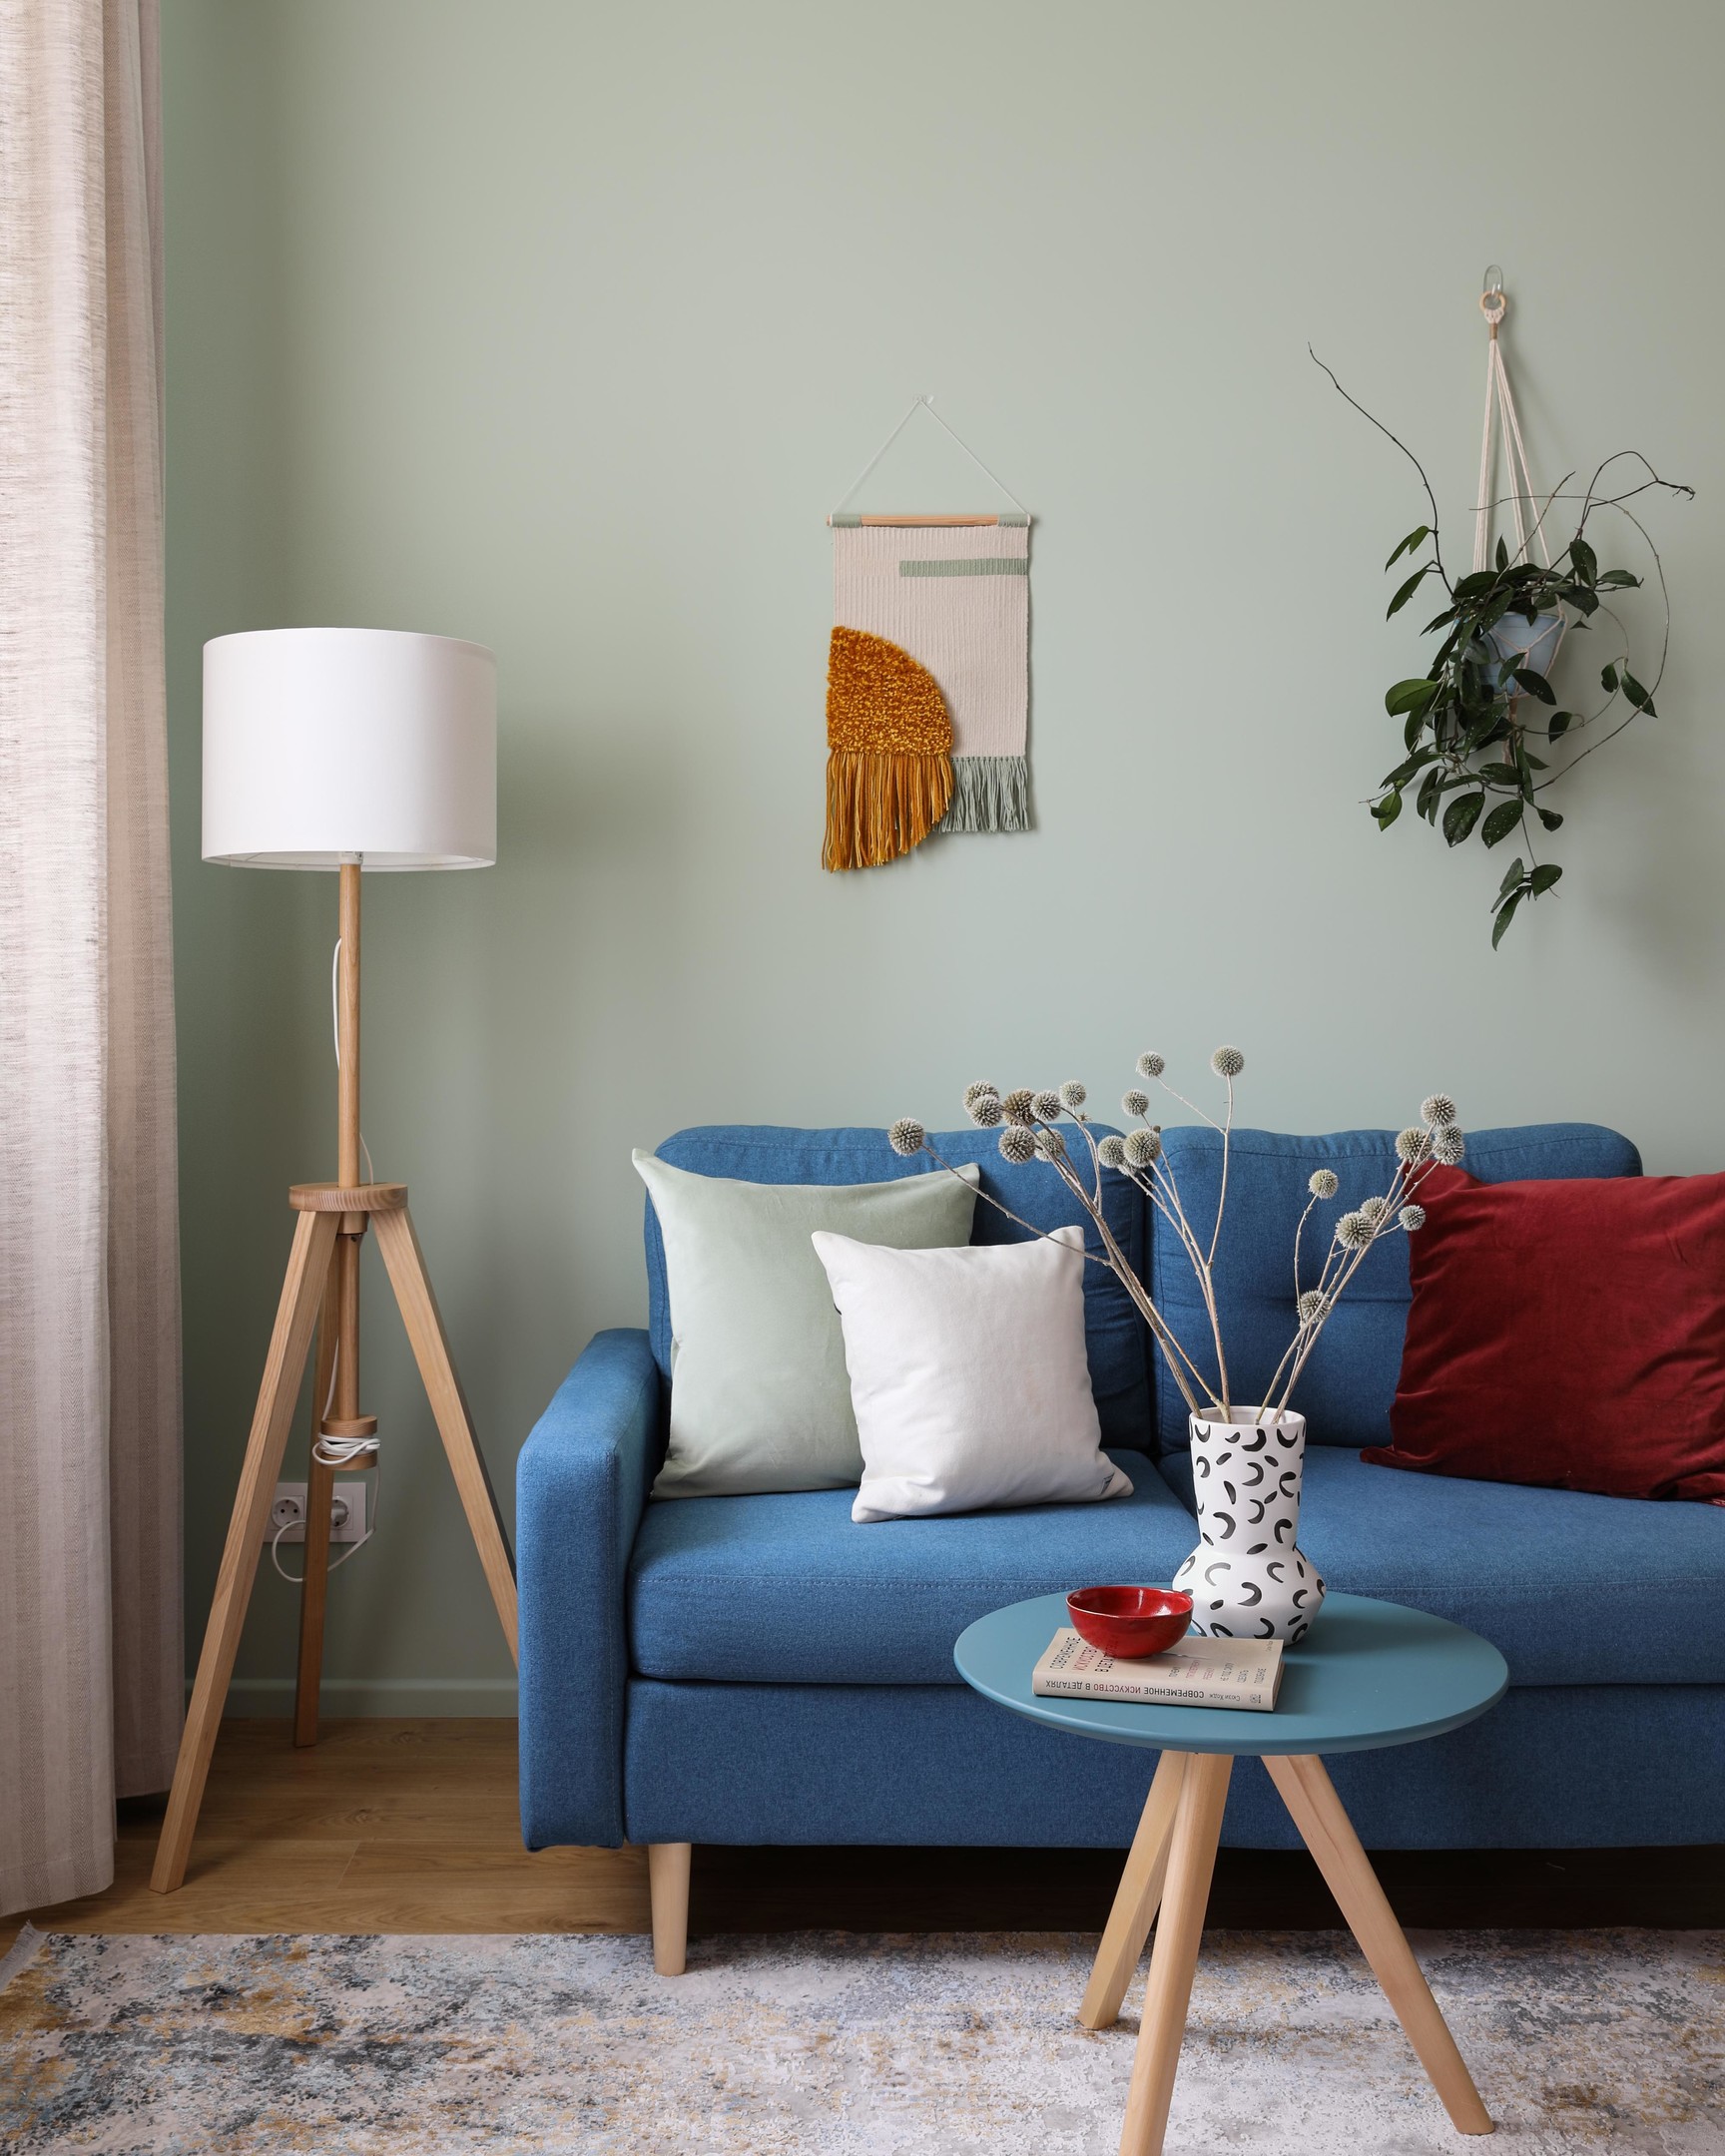 Phòng khách bố trí chiếc ghế sofa màu xanh lam đậm, 'tone sur tone' với bàn nước hình tròn nhỏ nhắn và được phân vùng với góc làm việc bằng tấm thảm trải sàn êm ái.